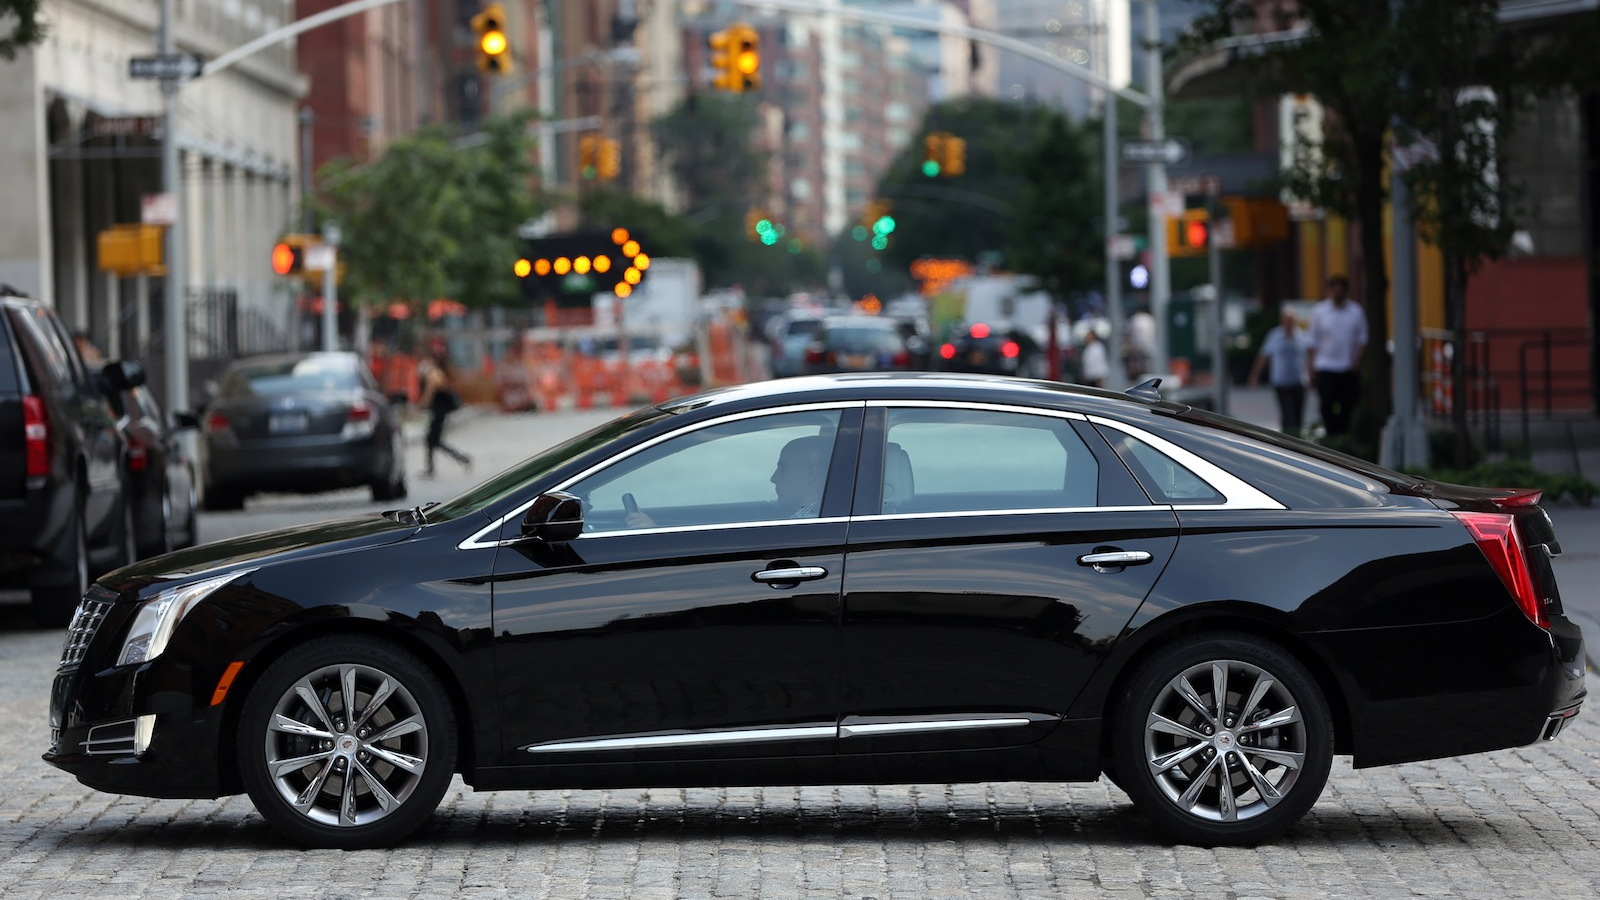 2013 Cadillac XTS - image: Cadillac